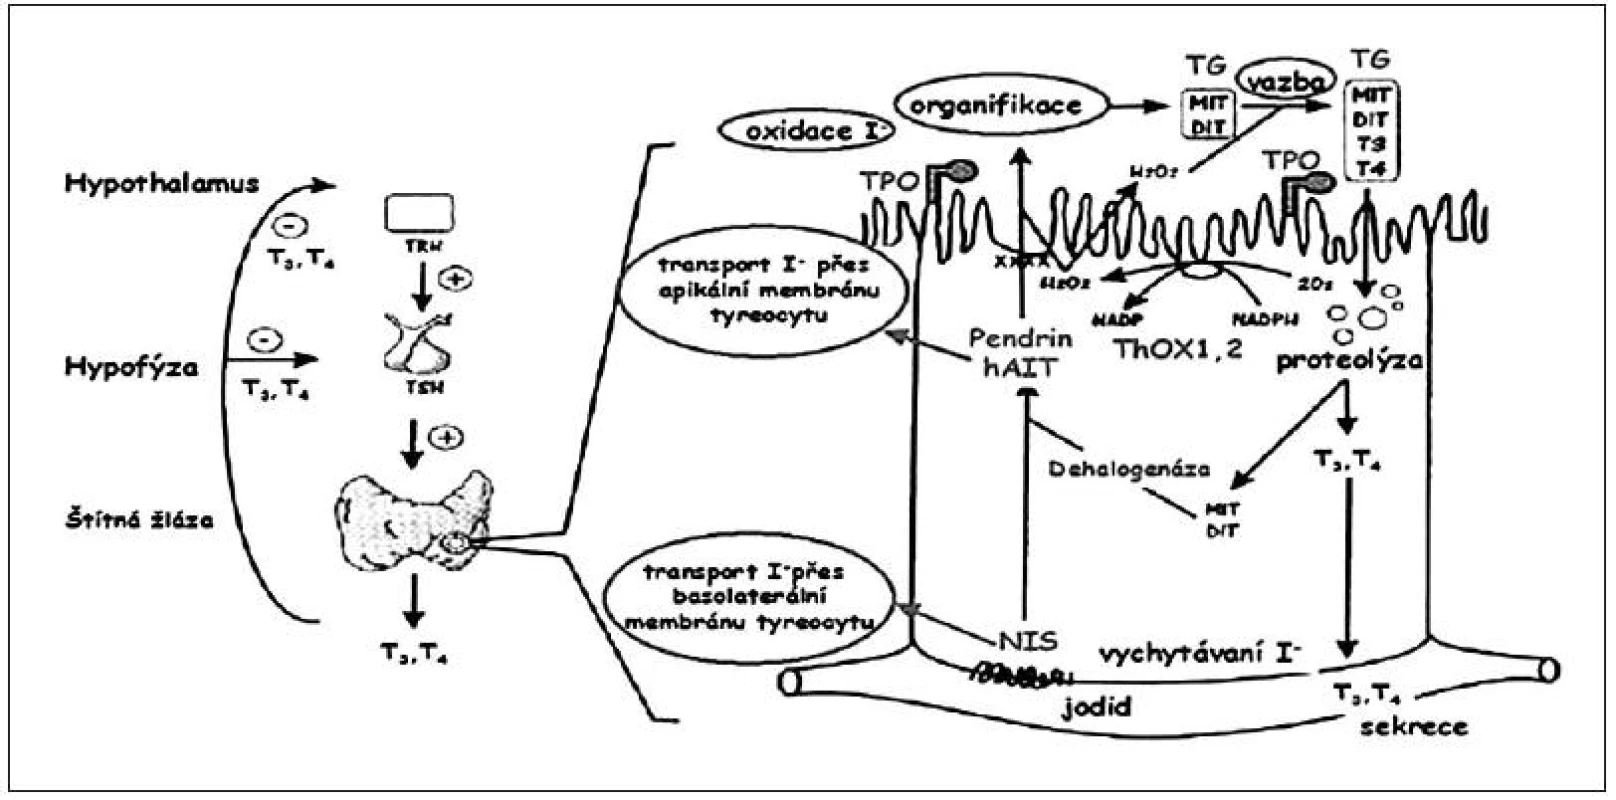 Důležité funkční součásti tyreocytu (folikulární buňky štítné žlázy) s naznačením možných poruch, které vedou k tyreoidální dyshormonogenezi. Dyshormonogeneze může být způsobena defektem jodidového transportního systému (NIS – transport z krve do tyreocytu, pendrinu a hAIT – transport z tyreocytu do lumen folikulu), enzymatických systémů (TPO – organifikace jodidu a spřažení, ThOX1, 2 – tvorba H<sub>2</sub>O<sub>2</sub>, dehalogenázy – dejodace MIT a DIT a recyklace jódu) a syntézy tyreoglobulinu. 
V levé části obrázku je schematicky naznačena regulace syntézy tyreoidálních hormonů (podle Karoliny Banghové a Evy Al Taji).